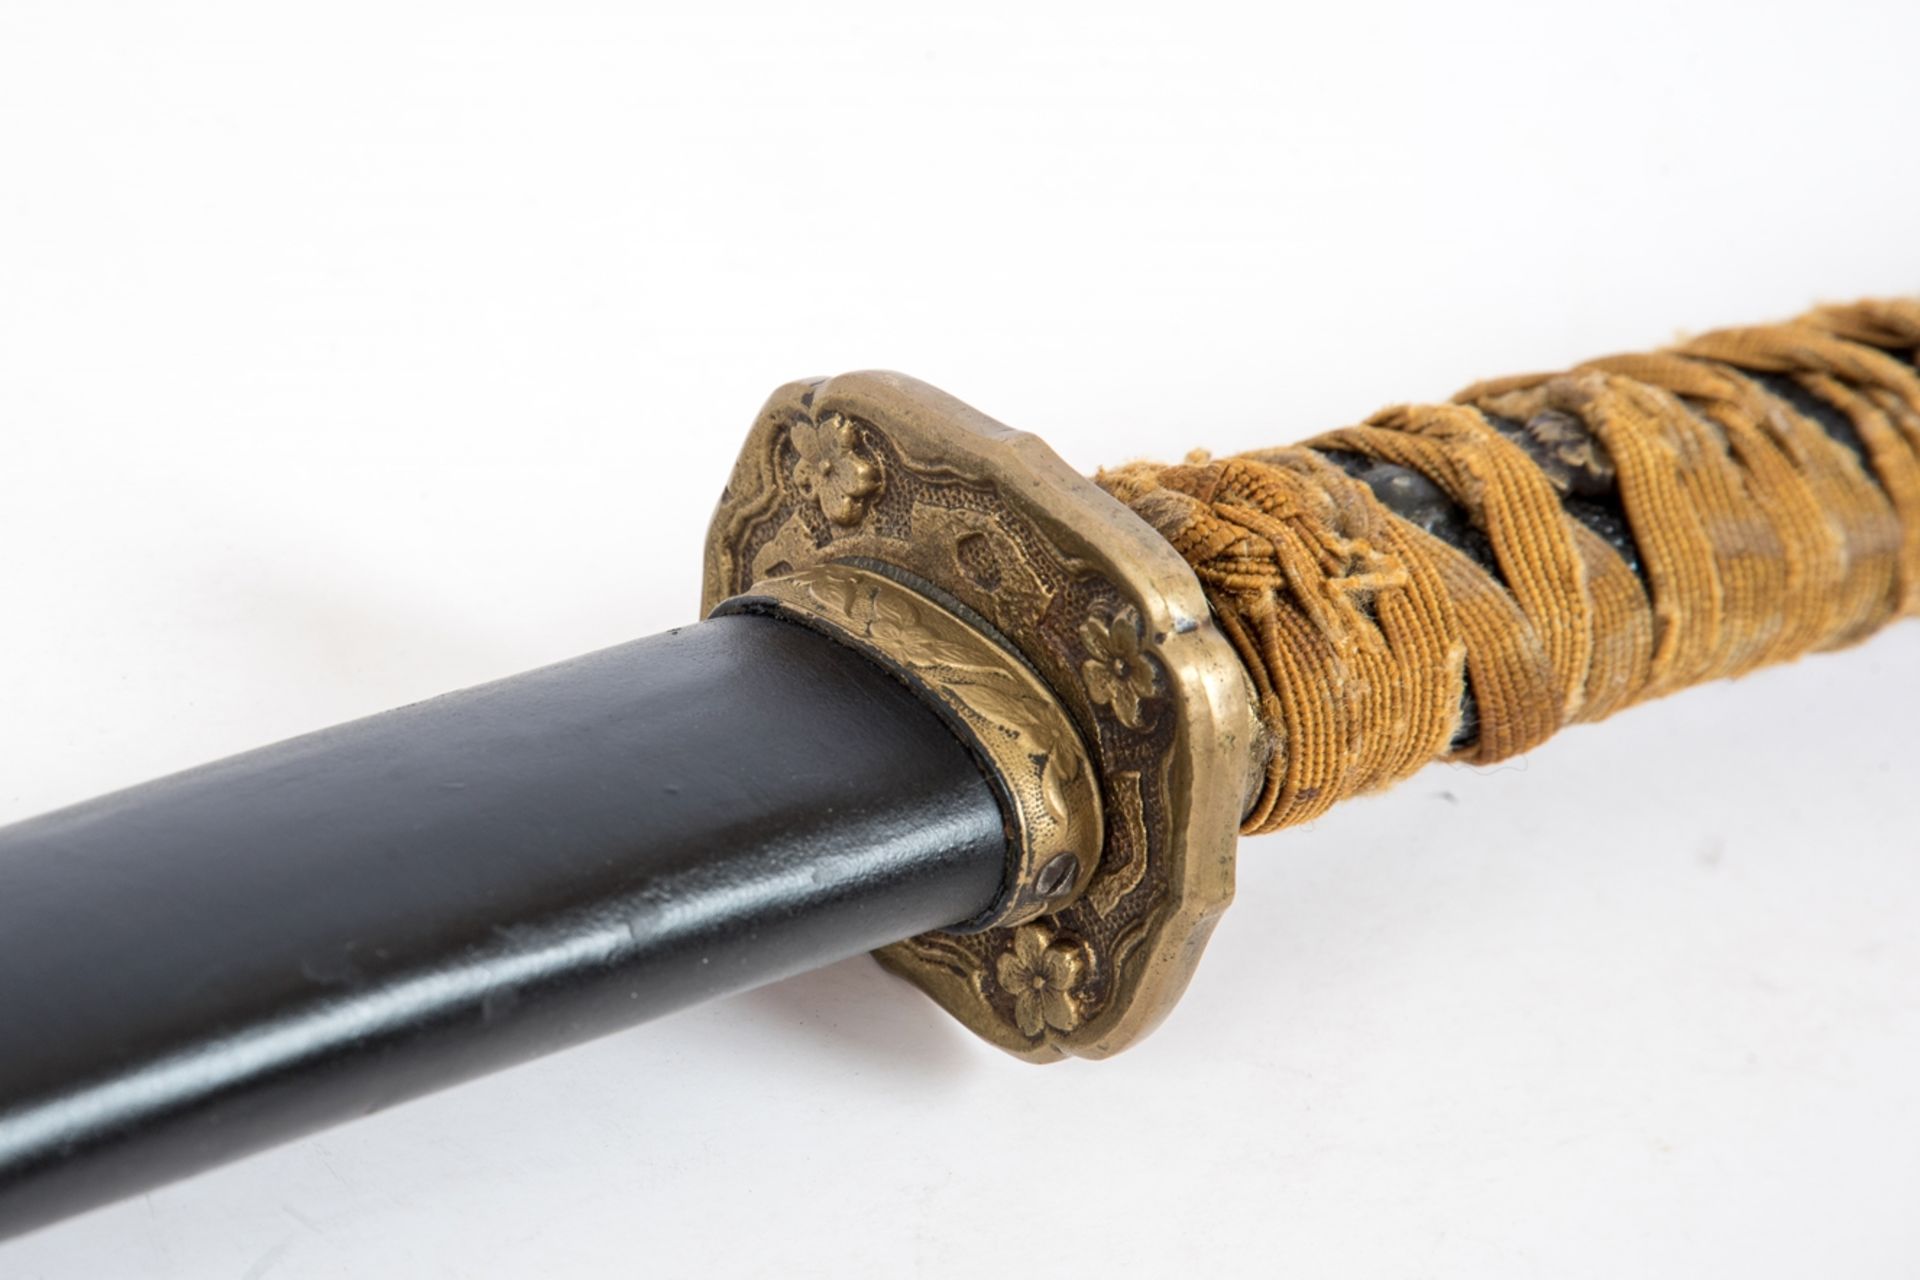 Samurai-Schwert (Katana) - Image 2 of 4